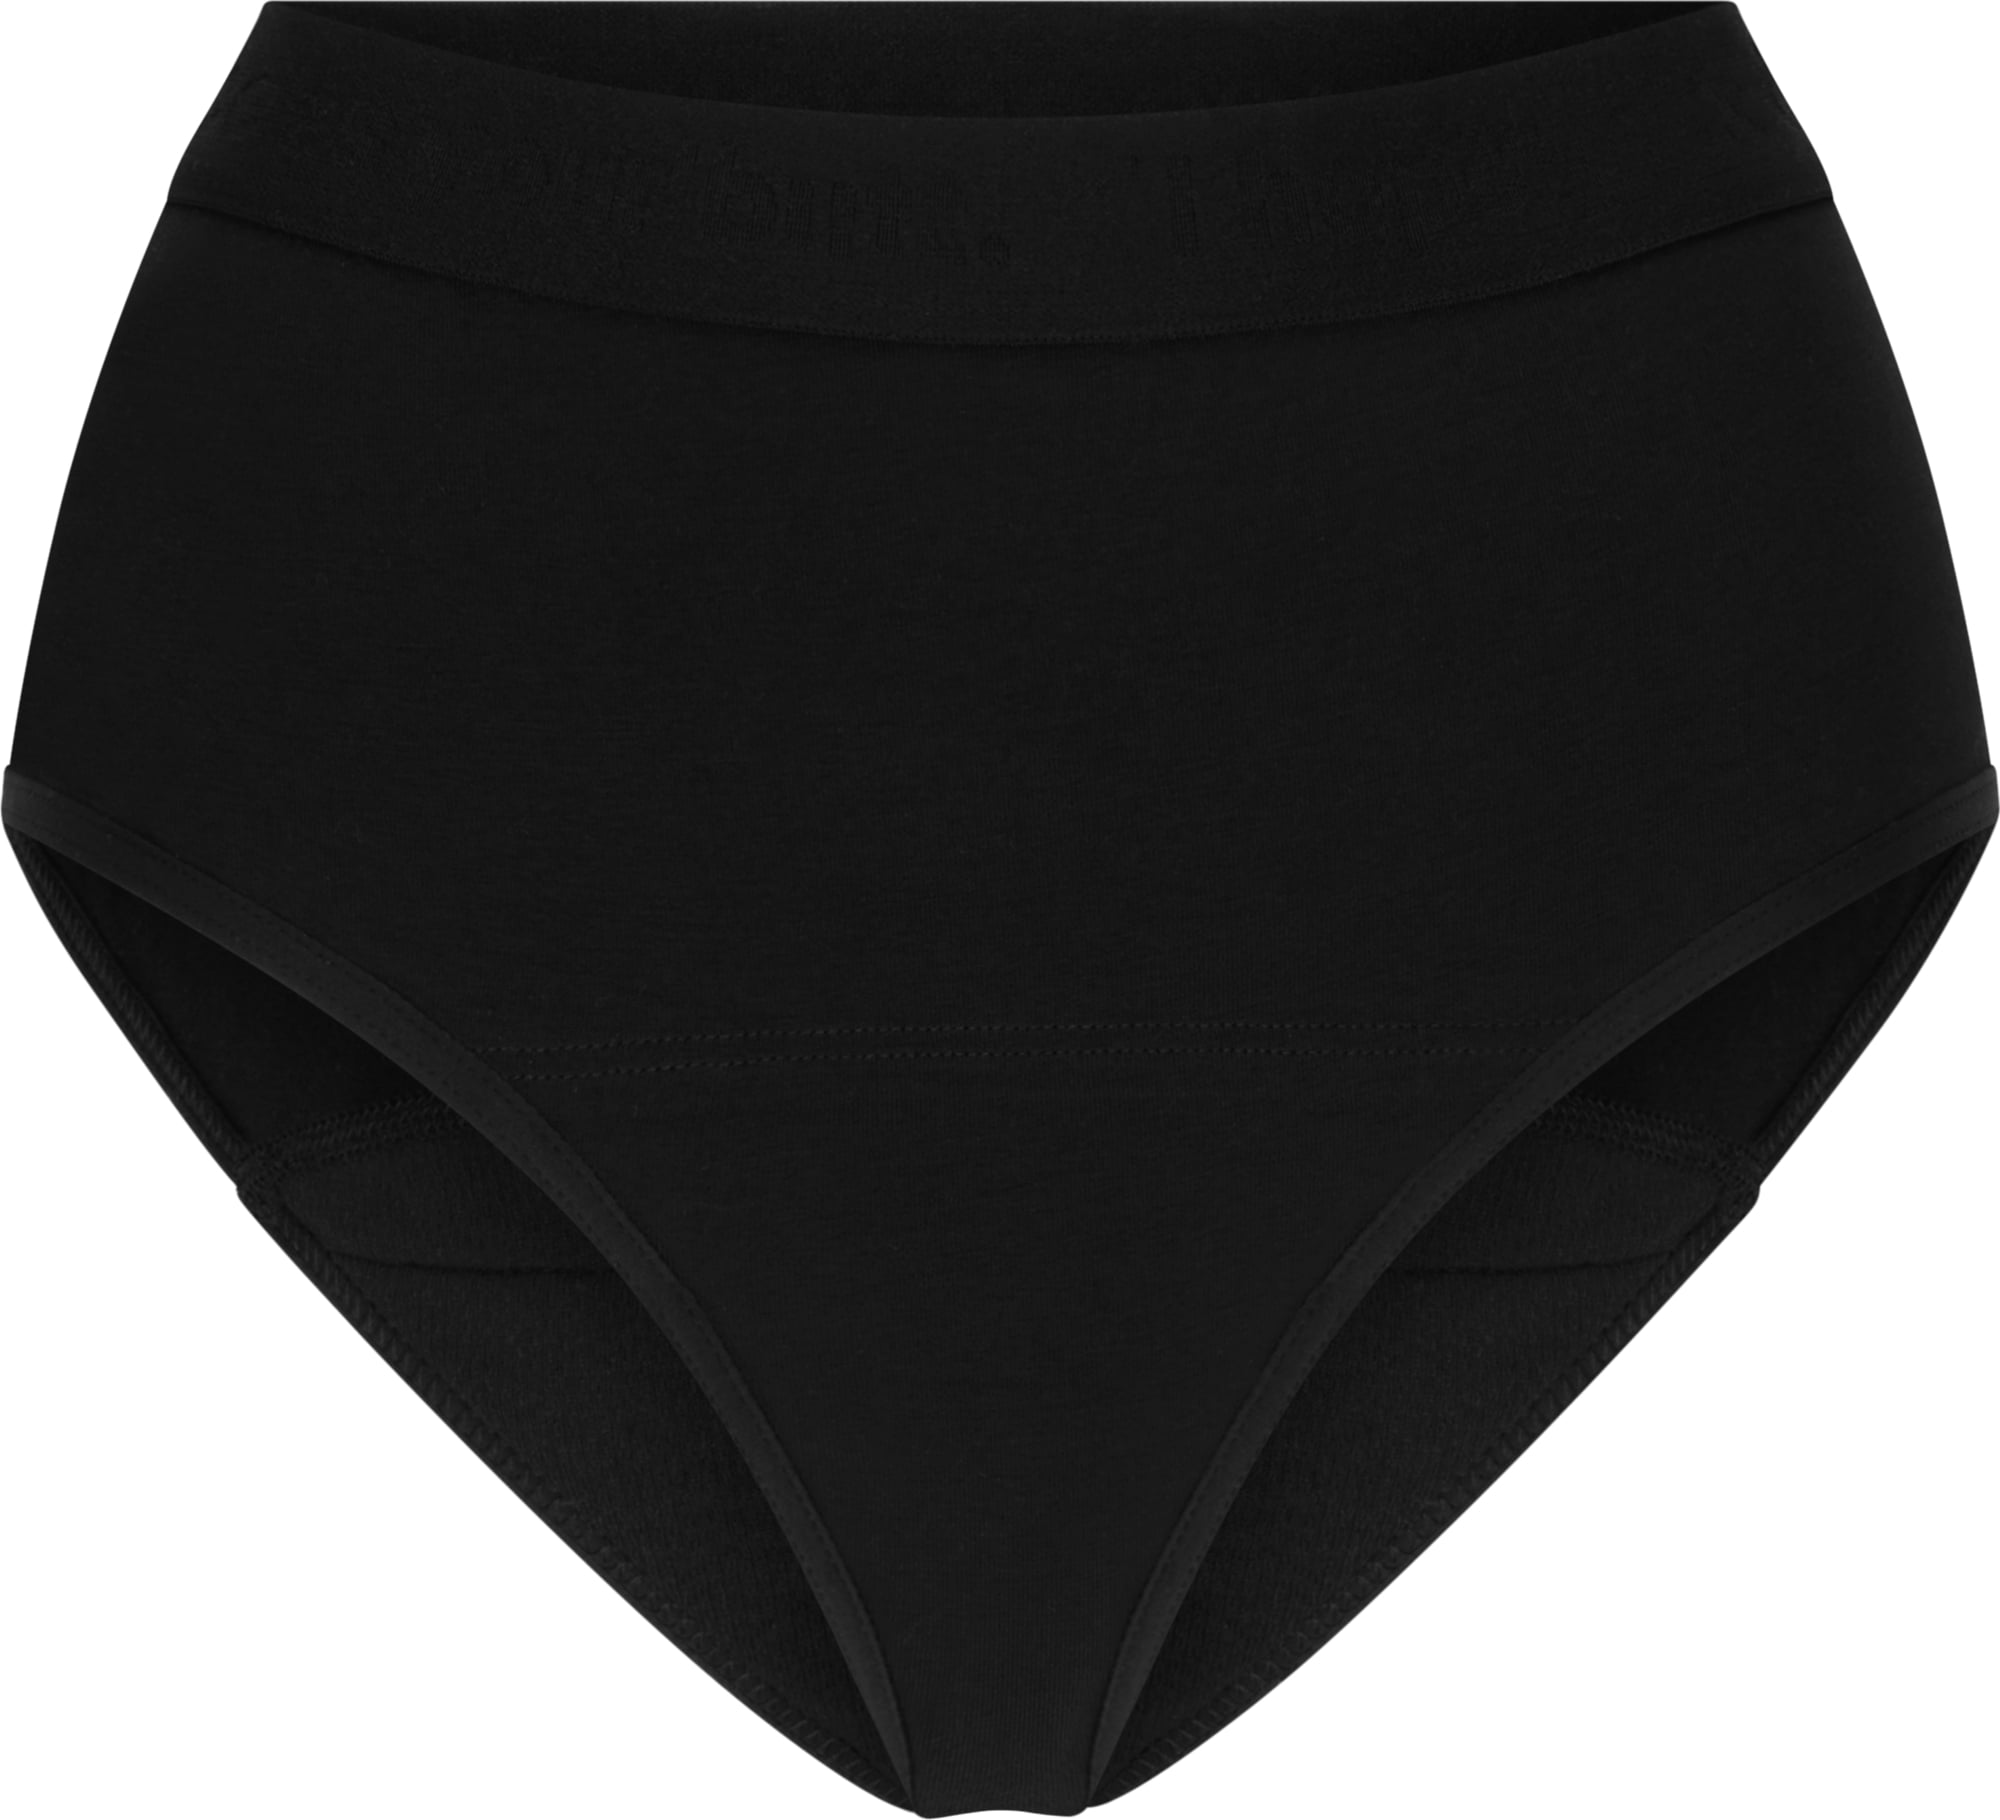 Women's Black Underwear sold by Intellectual Lyricist